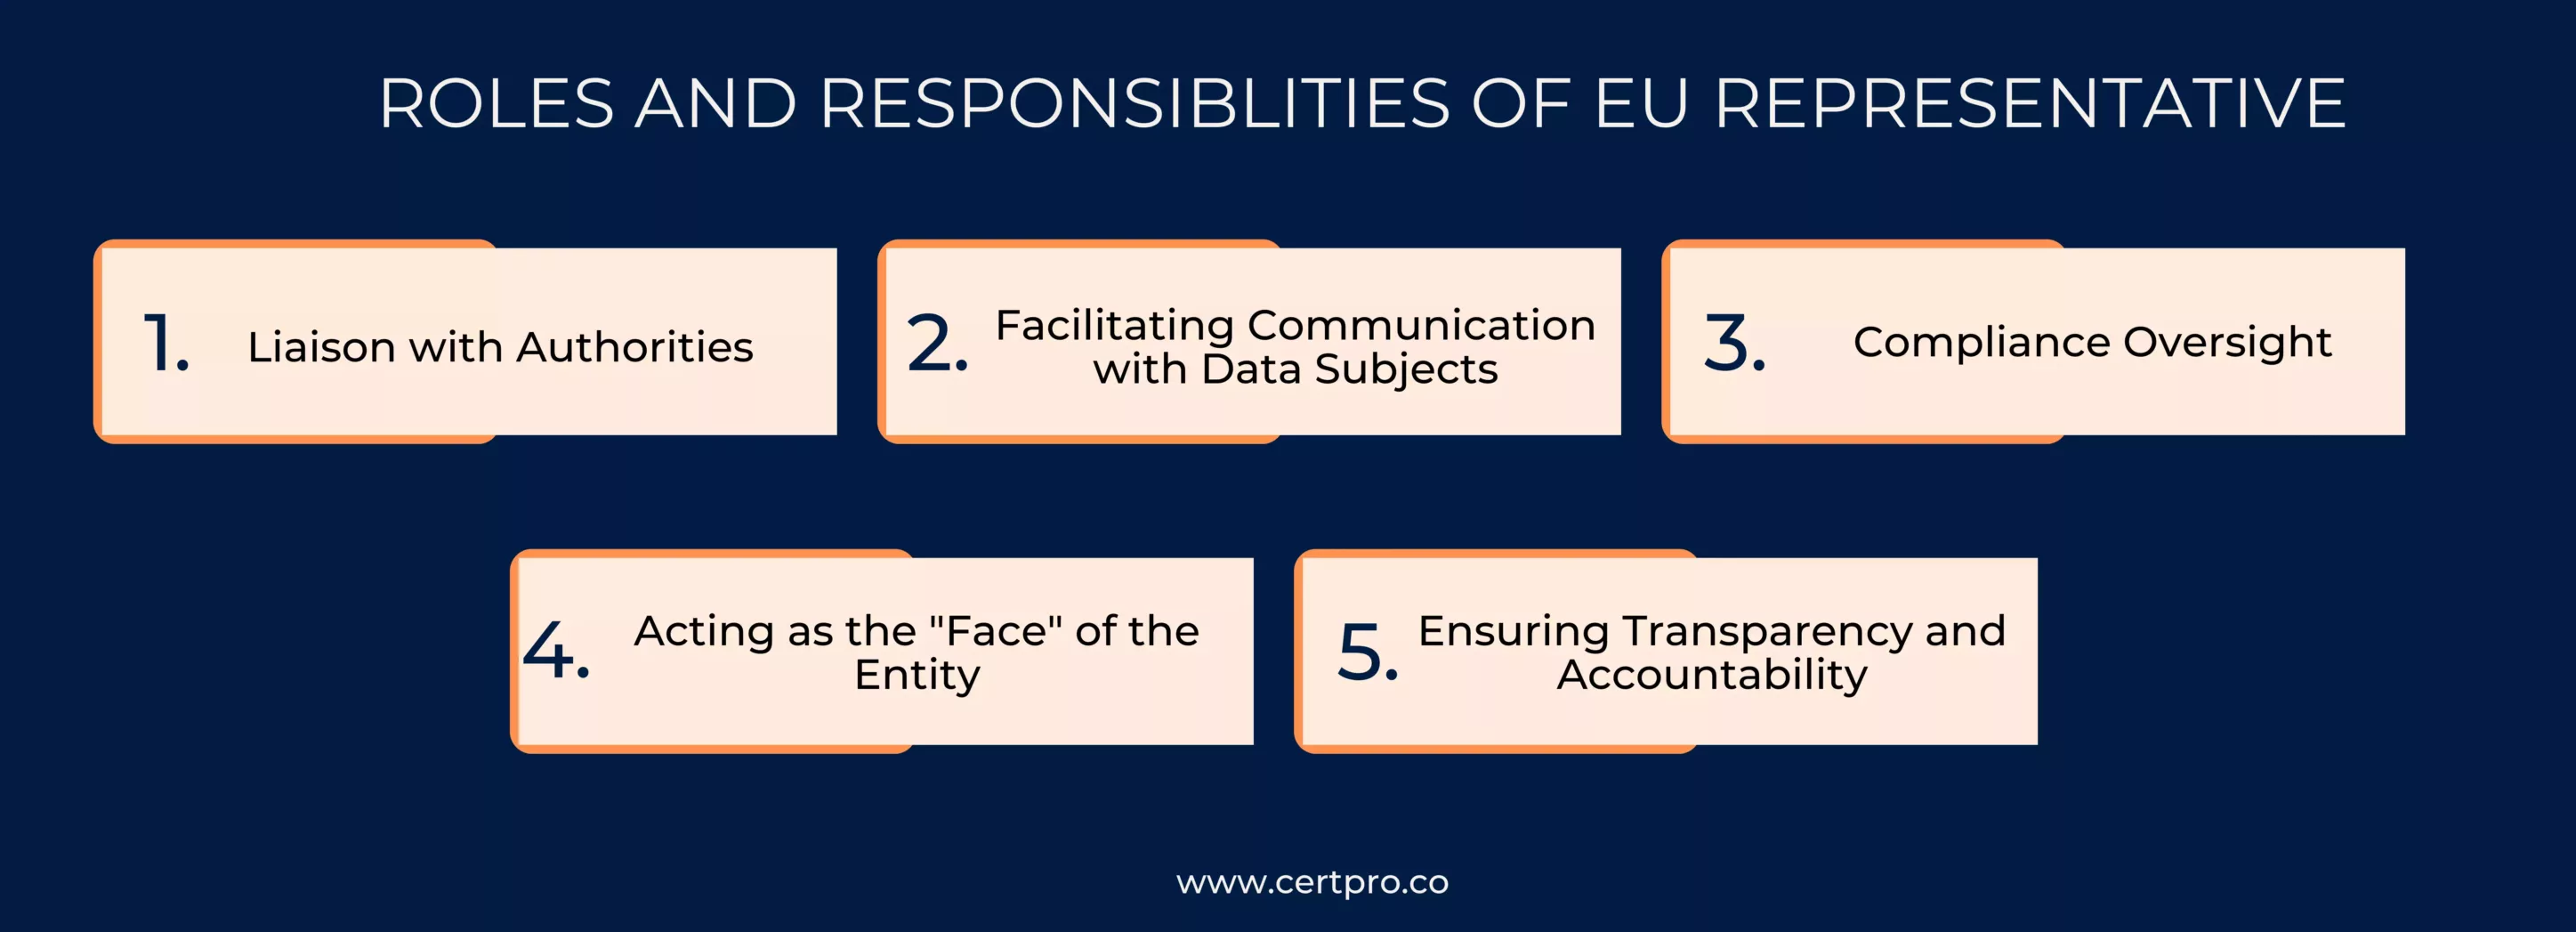 Roles and responsiblities of EU representative